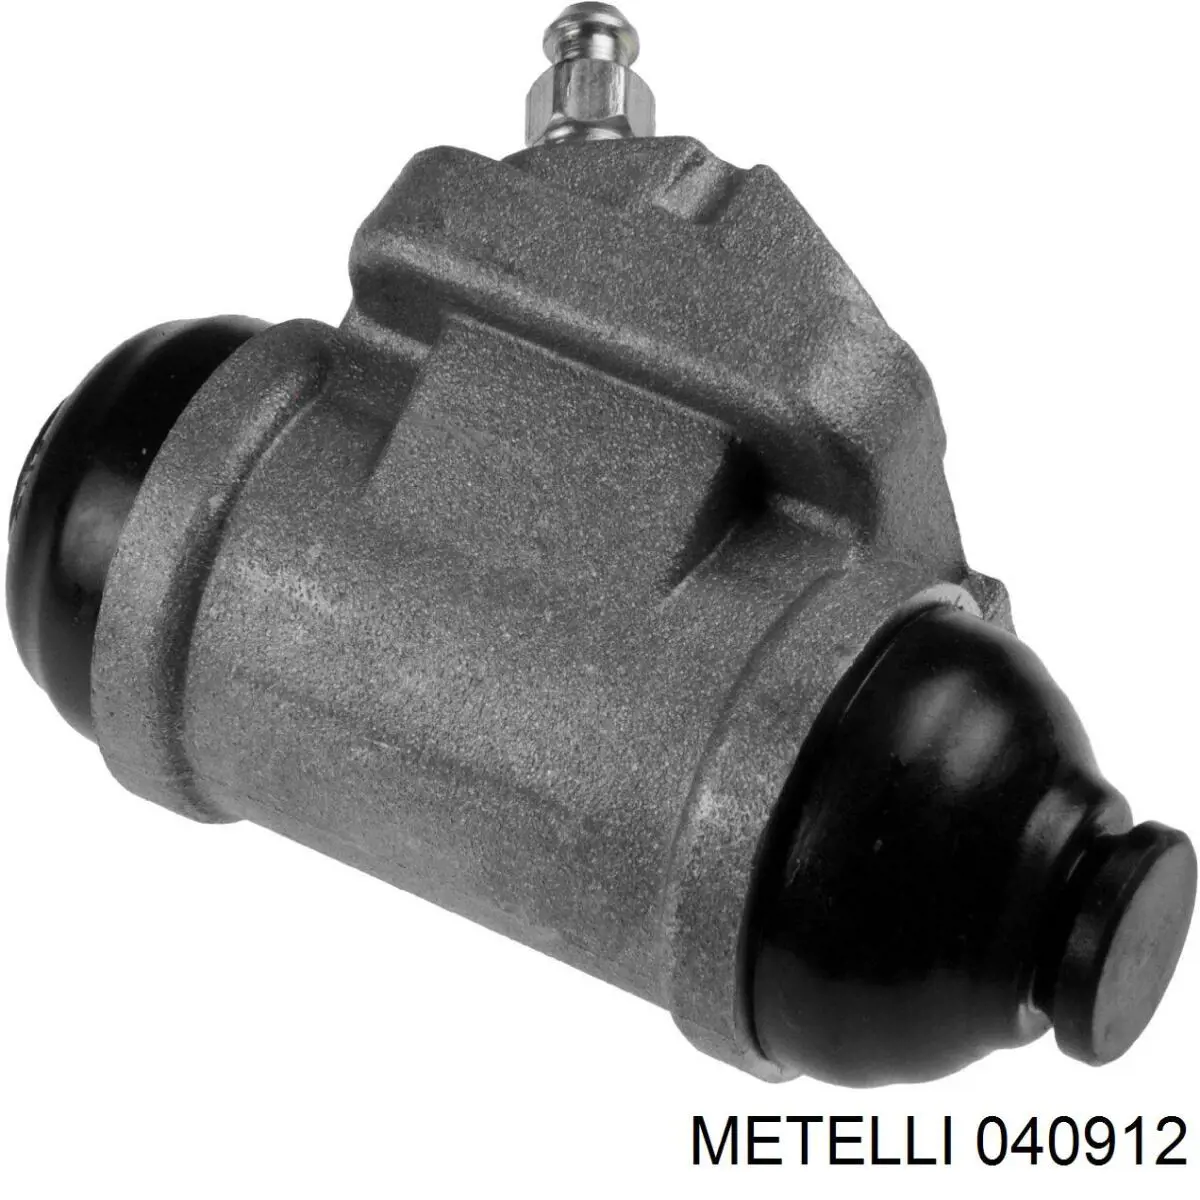 04-0912 Metelli цилиндр тормозной колесный рабочий задний